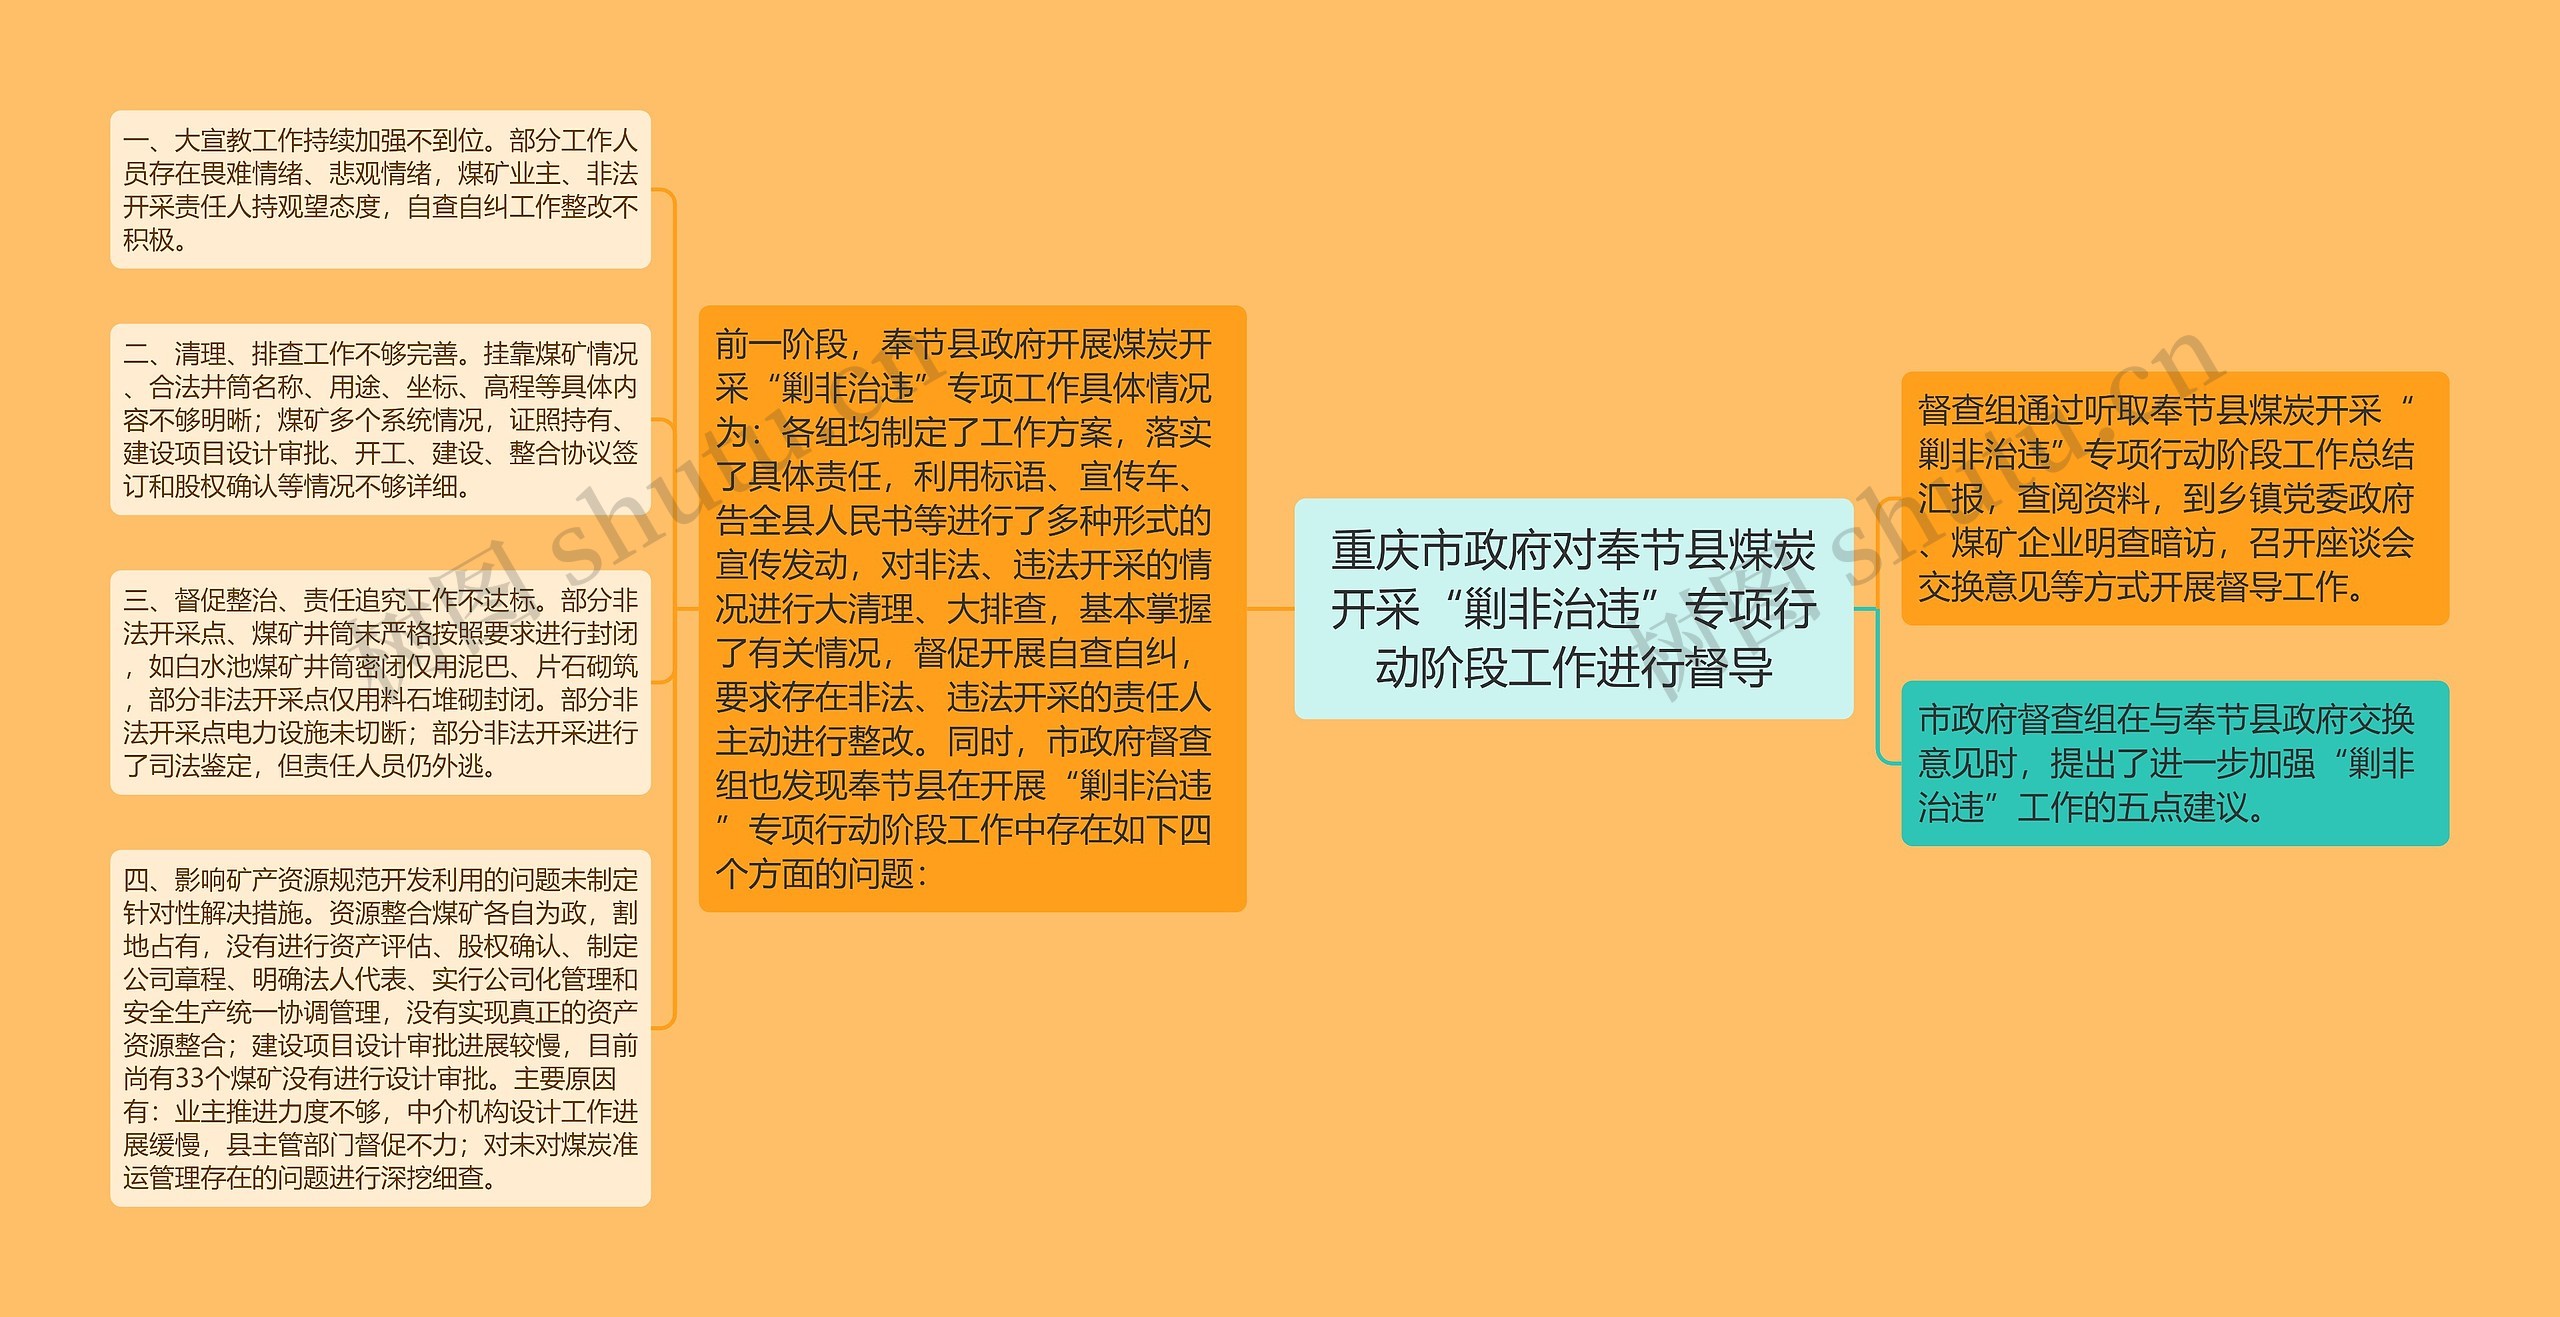 重庆市政府对奉节县煤炭开采“剿非治违”专项行动阶段工作进行督导思维导图